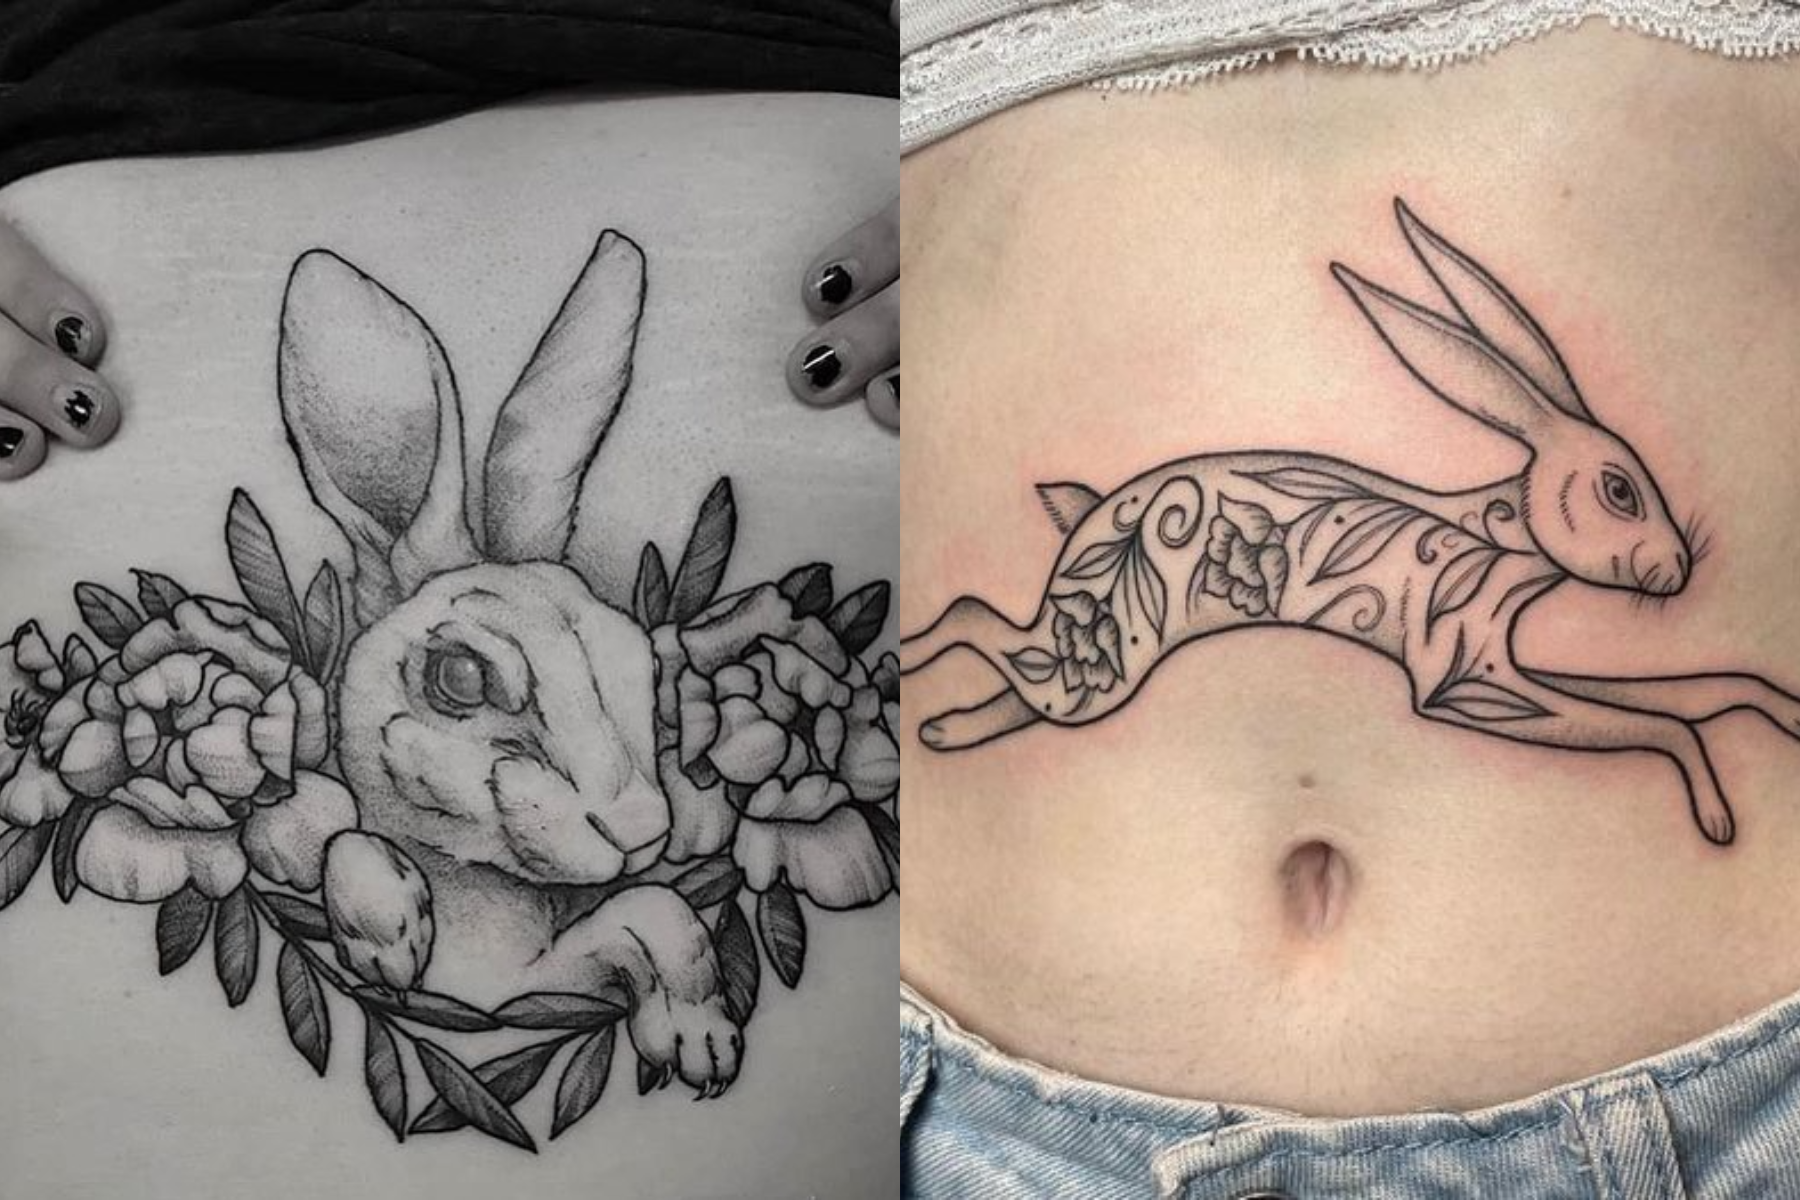 Ladies with rabbit tattoos on their upper abdomen